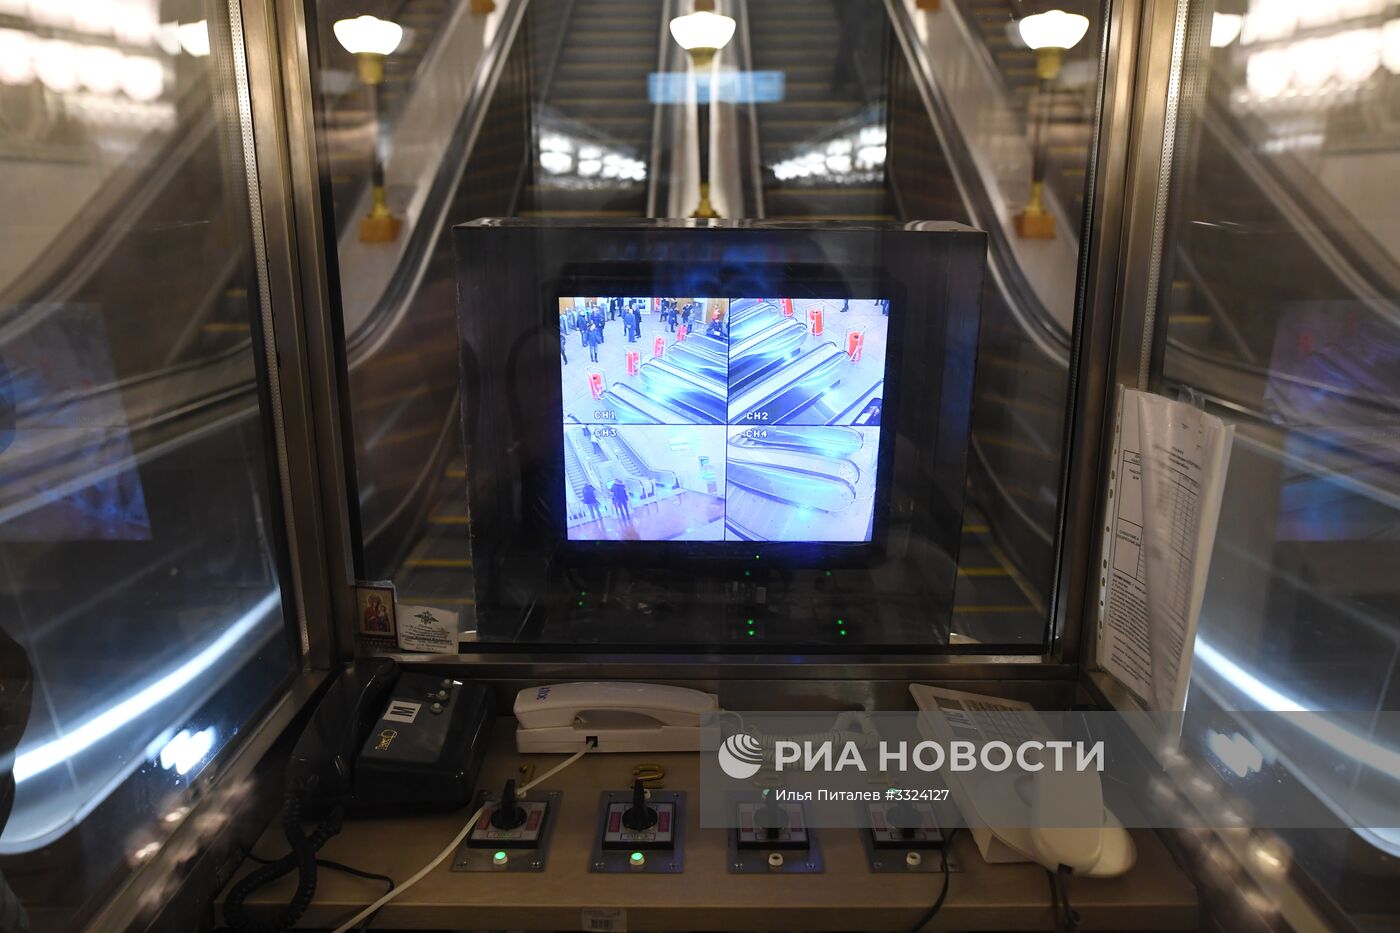 Открытие южного вестибюля станции метро "Спортивная"